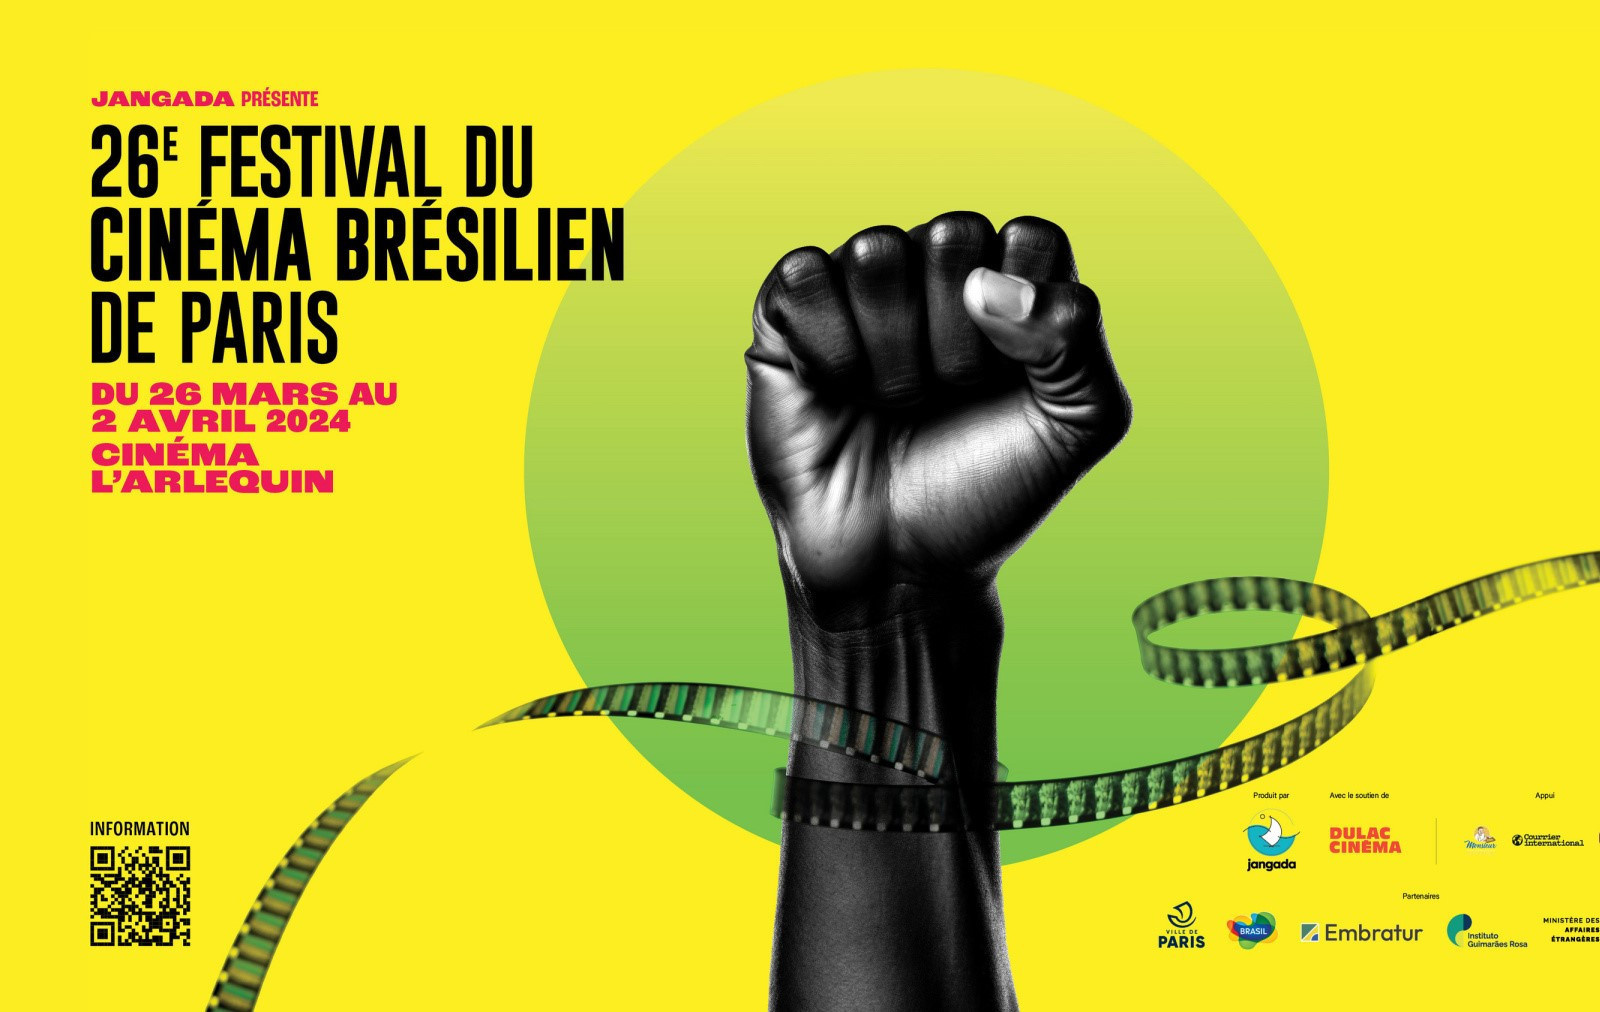 O Festival de Cinema Brasileiro de Paris comemora sua 26ª edição!